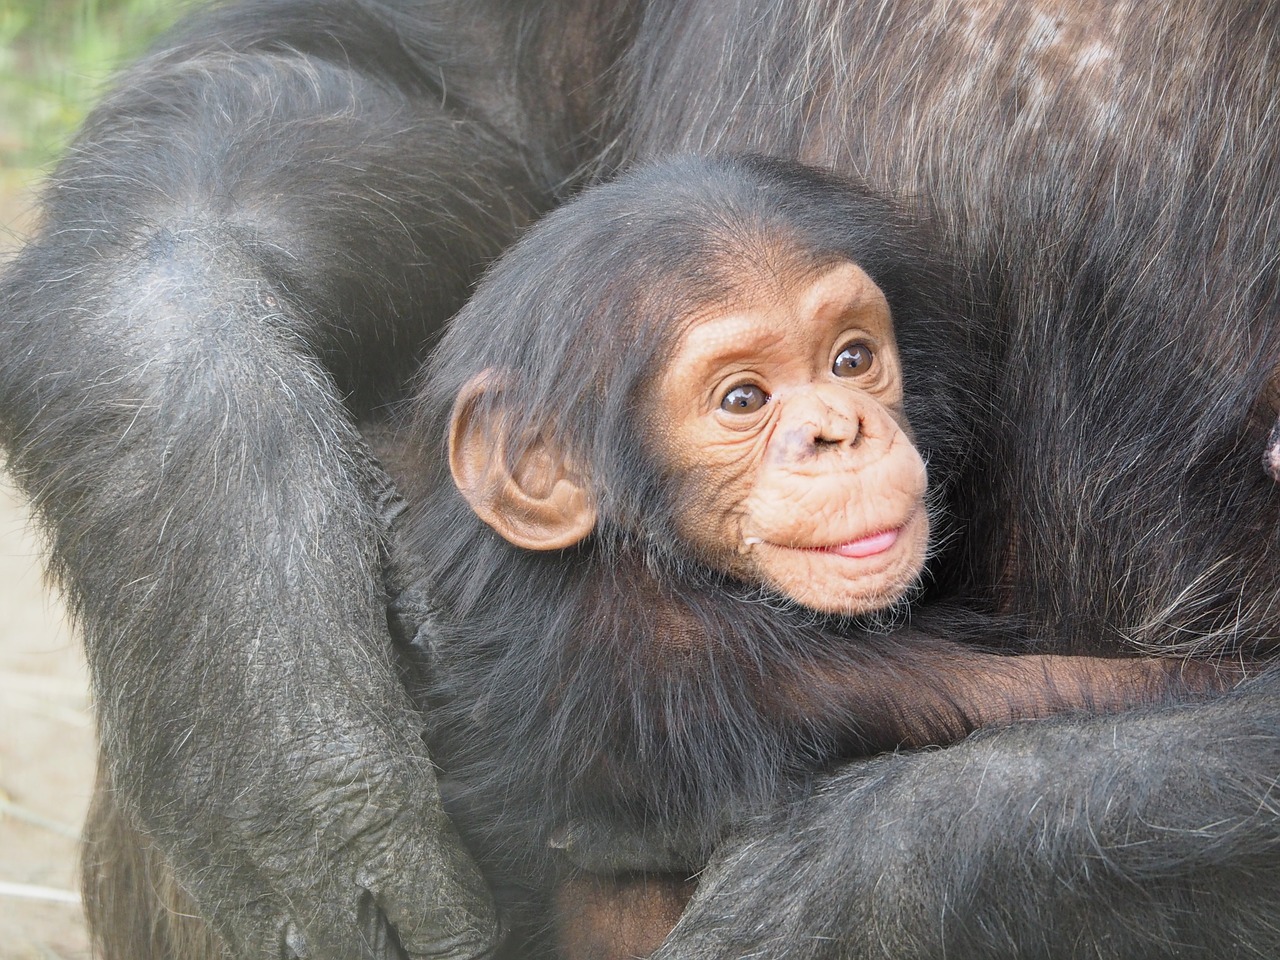 Gran noticia: Estados Unidos le pone fin a investigaciones biomédicas con chimpancés